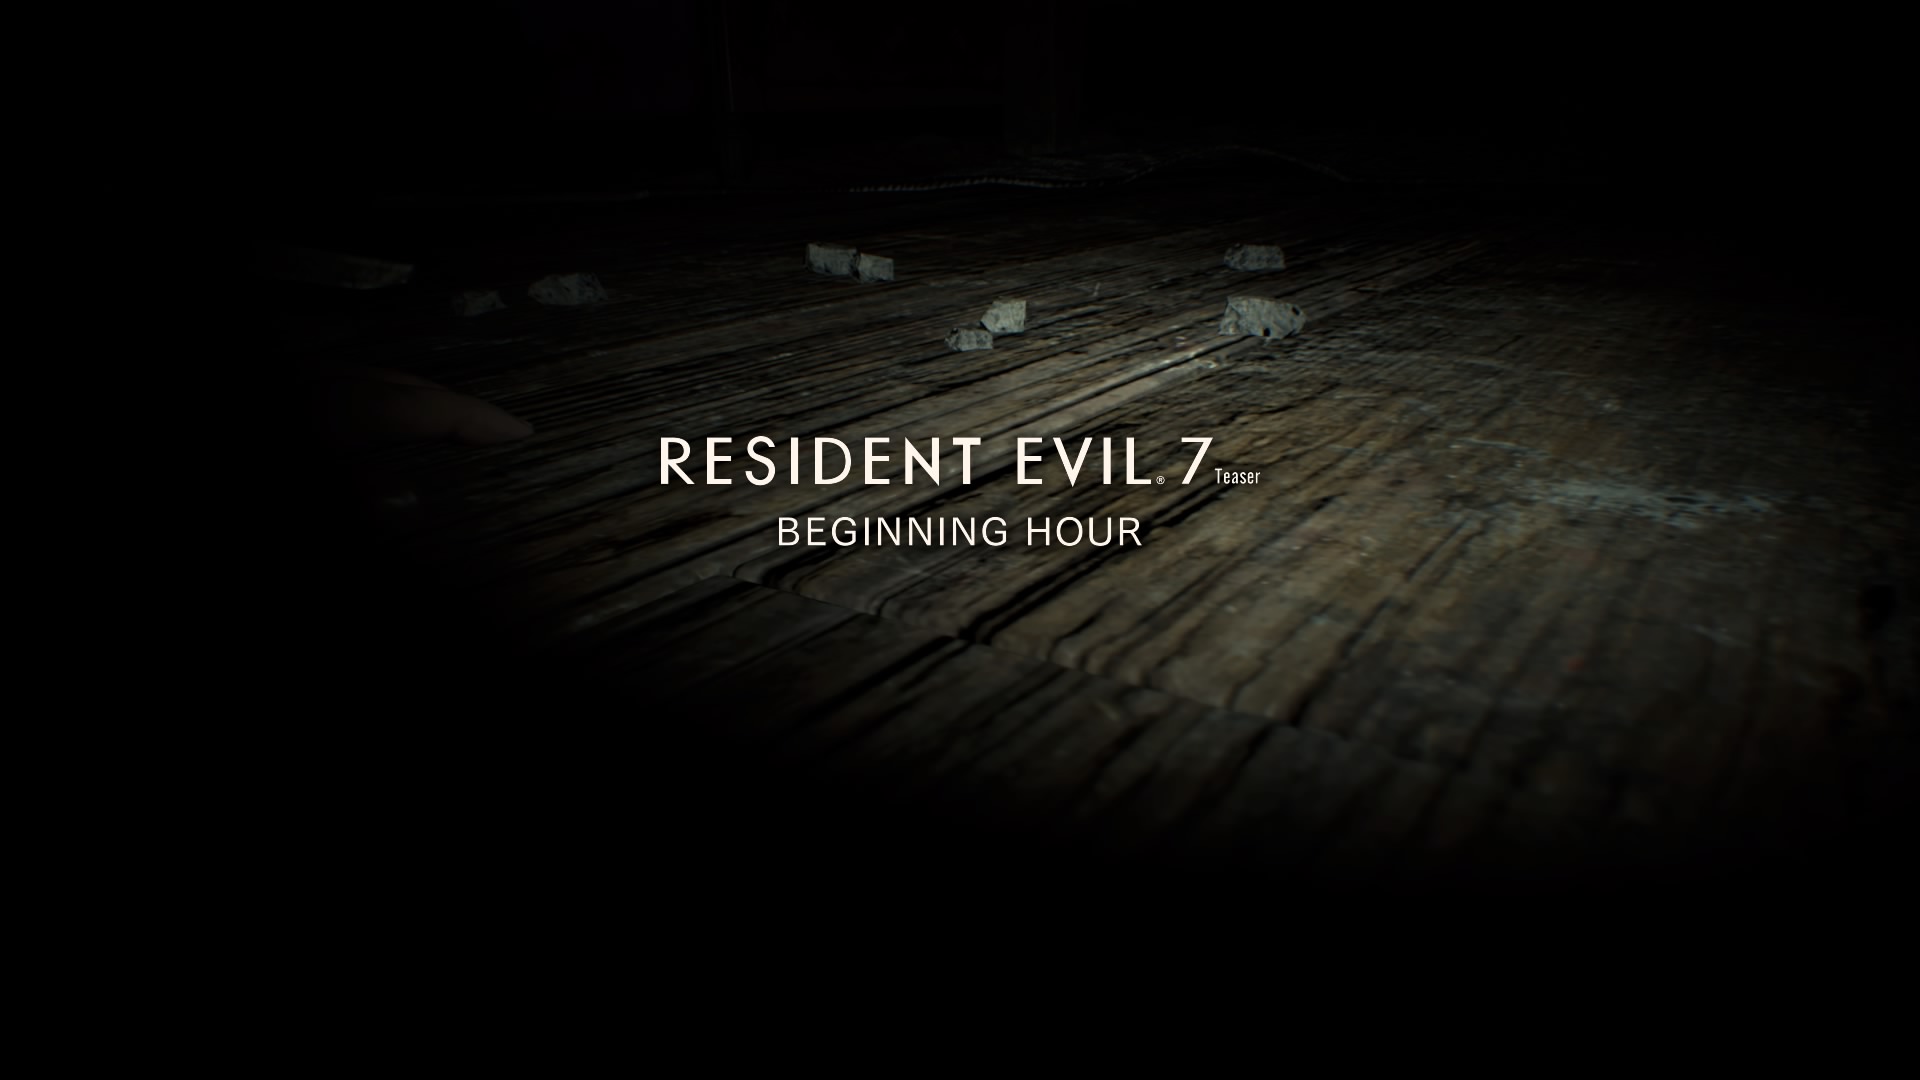 Resident Evil 7 Teaser_ Beginning Hour_20161003152544.jpg